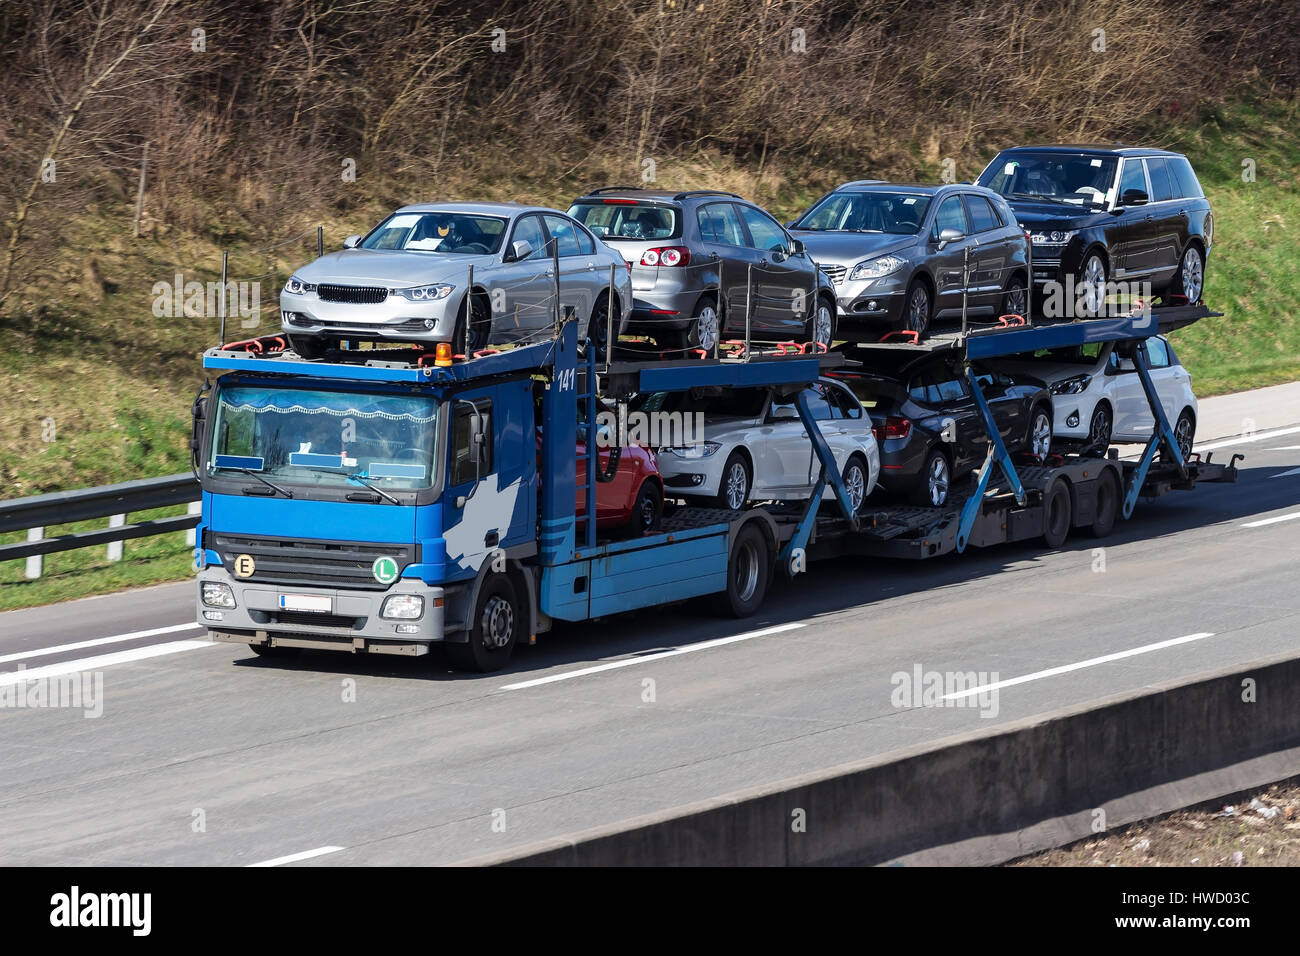 Motor traffic - highway, Autoverkehr - Autobahn Stock Photo